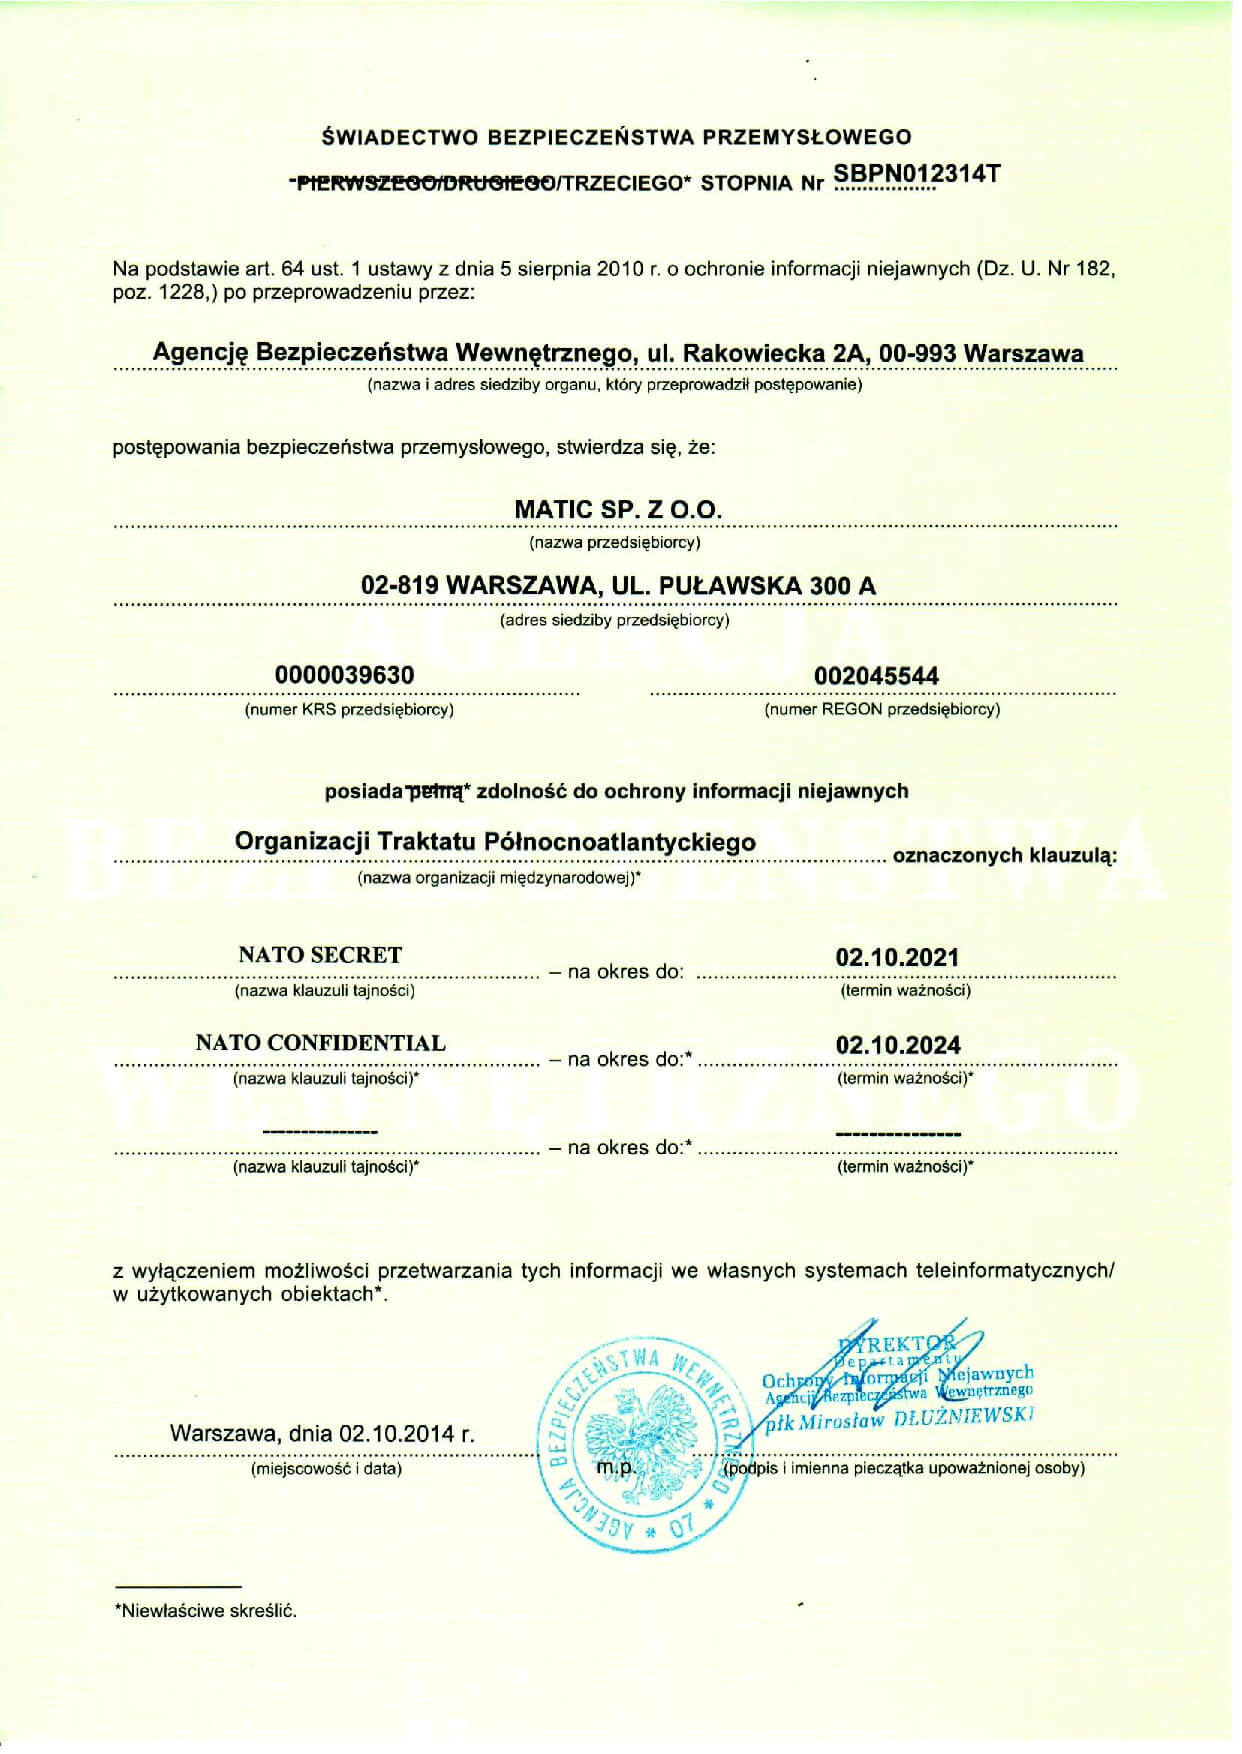 Matic SA Certyfikat poświadczenie bezpieczeństwa przemysłowego